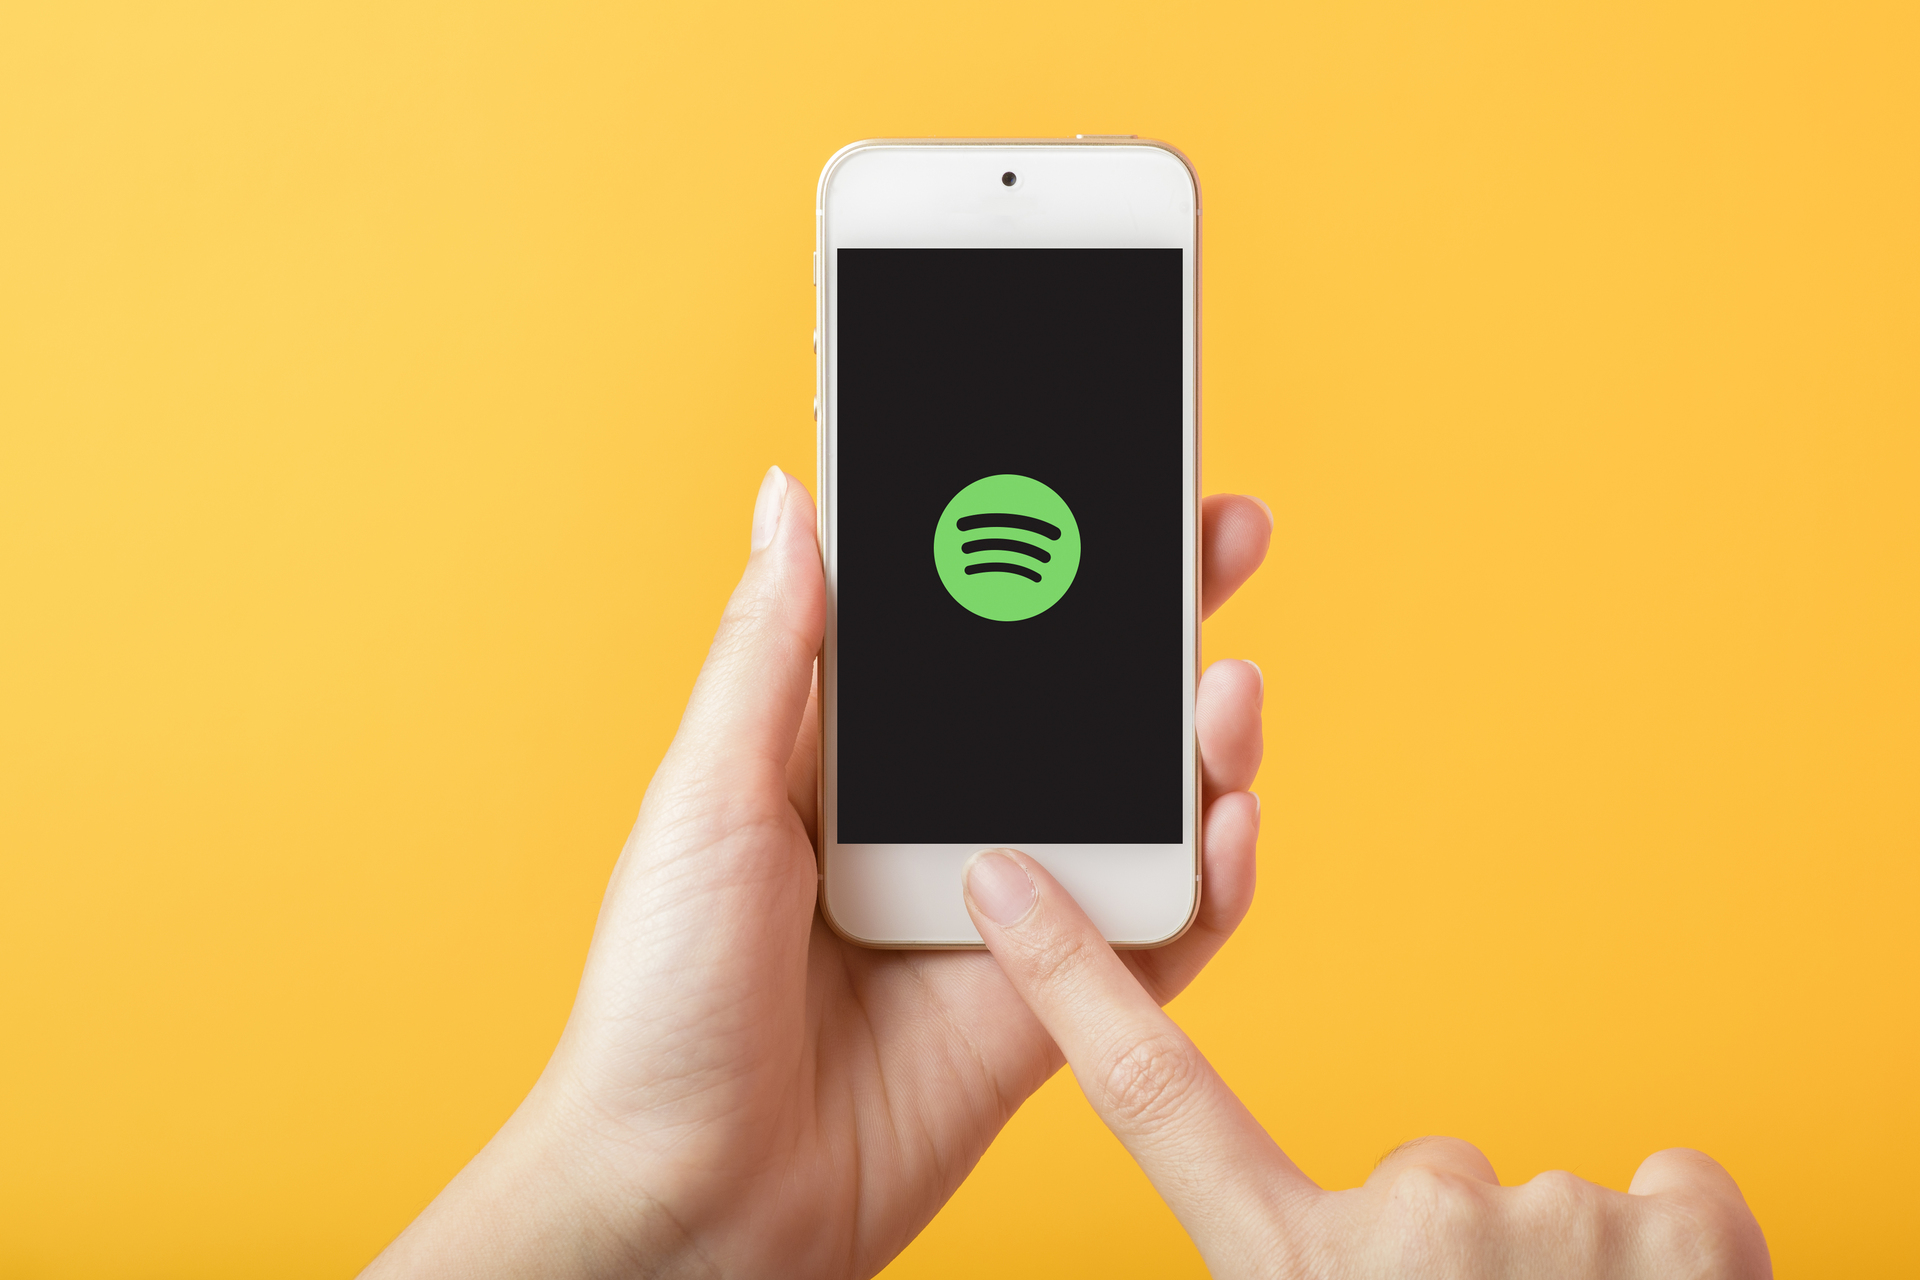 Ein Smartphone, gehalten in einer Hand gegen einen orangefarbenen Hintergrund, mit dem Spotify-Logo auf dem Bildschirm beim Start der App